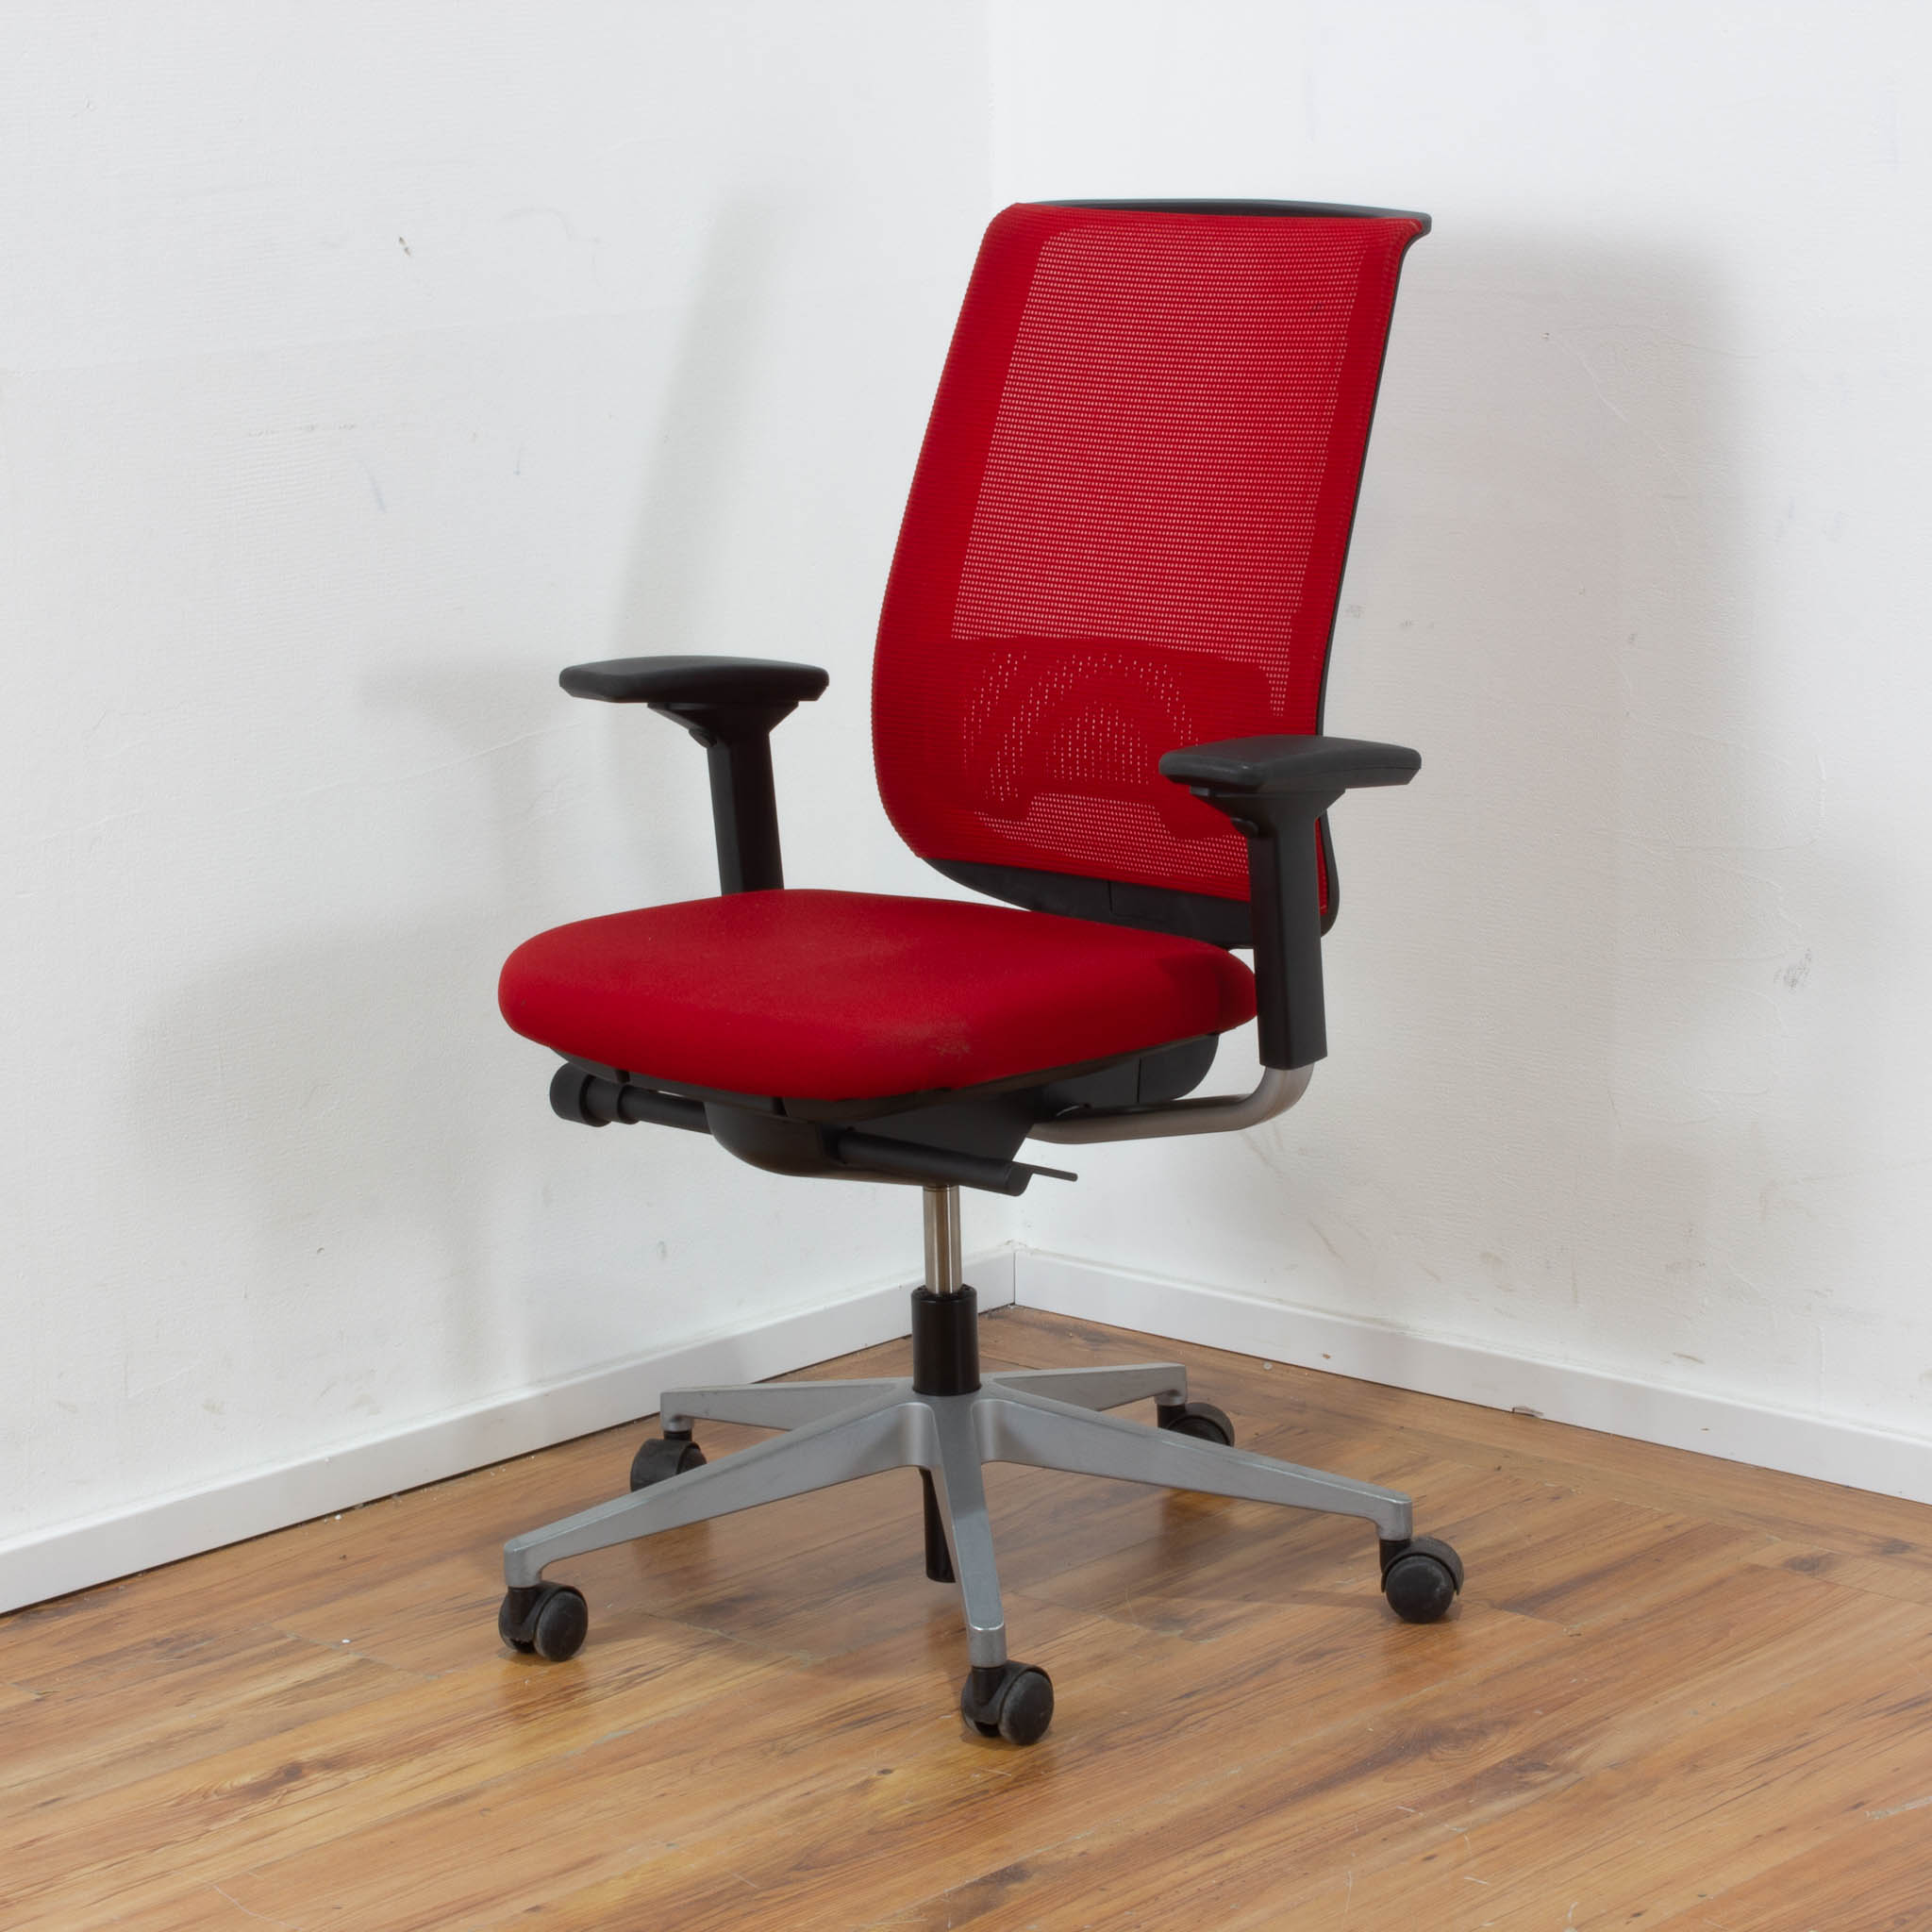 Steelcase Bürodrehstuhl rot mit Netz-Rückenlehne - 5-Sternfußgestell silber